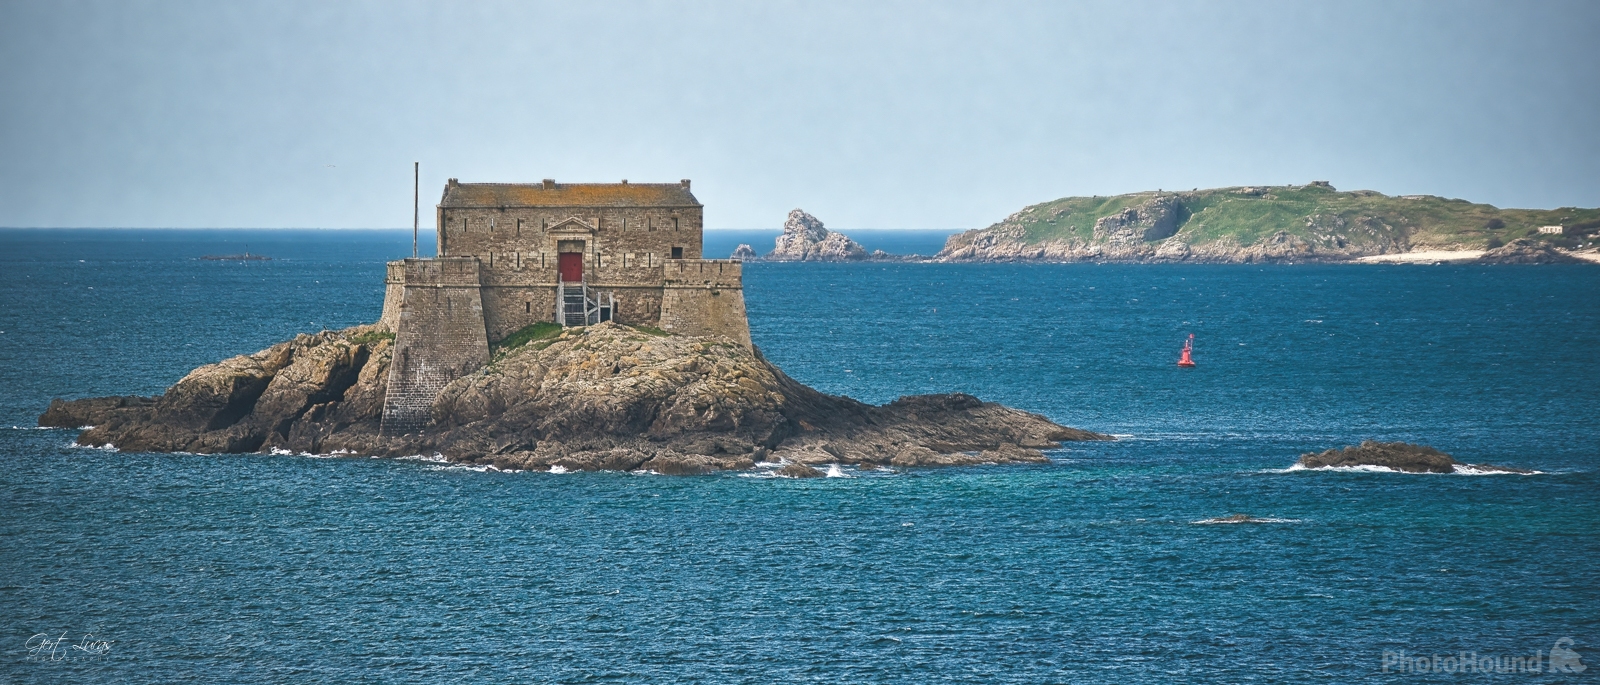 Image of Bastion de la Hollande, Saint Malo by Gert Lucas